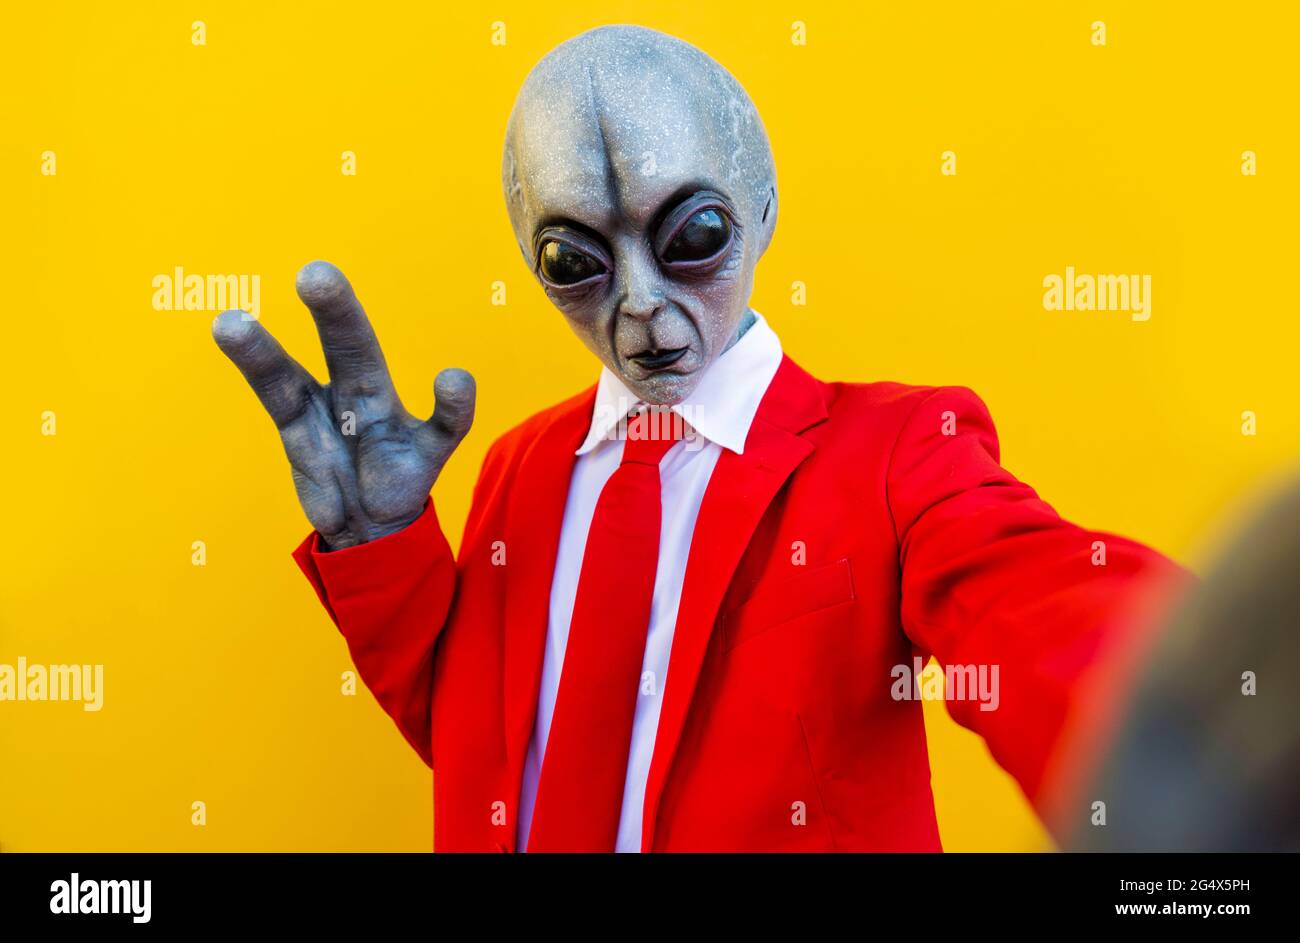 https://c8.alamy.com/compit/2g4x5ph/ritratto-di-un-uomo-che-indossa-un-costume-alieno-e-un-vestito-rosso-brillante-che-raggiunge-la-fotocamera-2g4x5ph.jpg